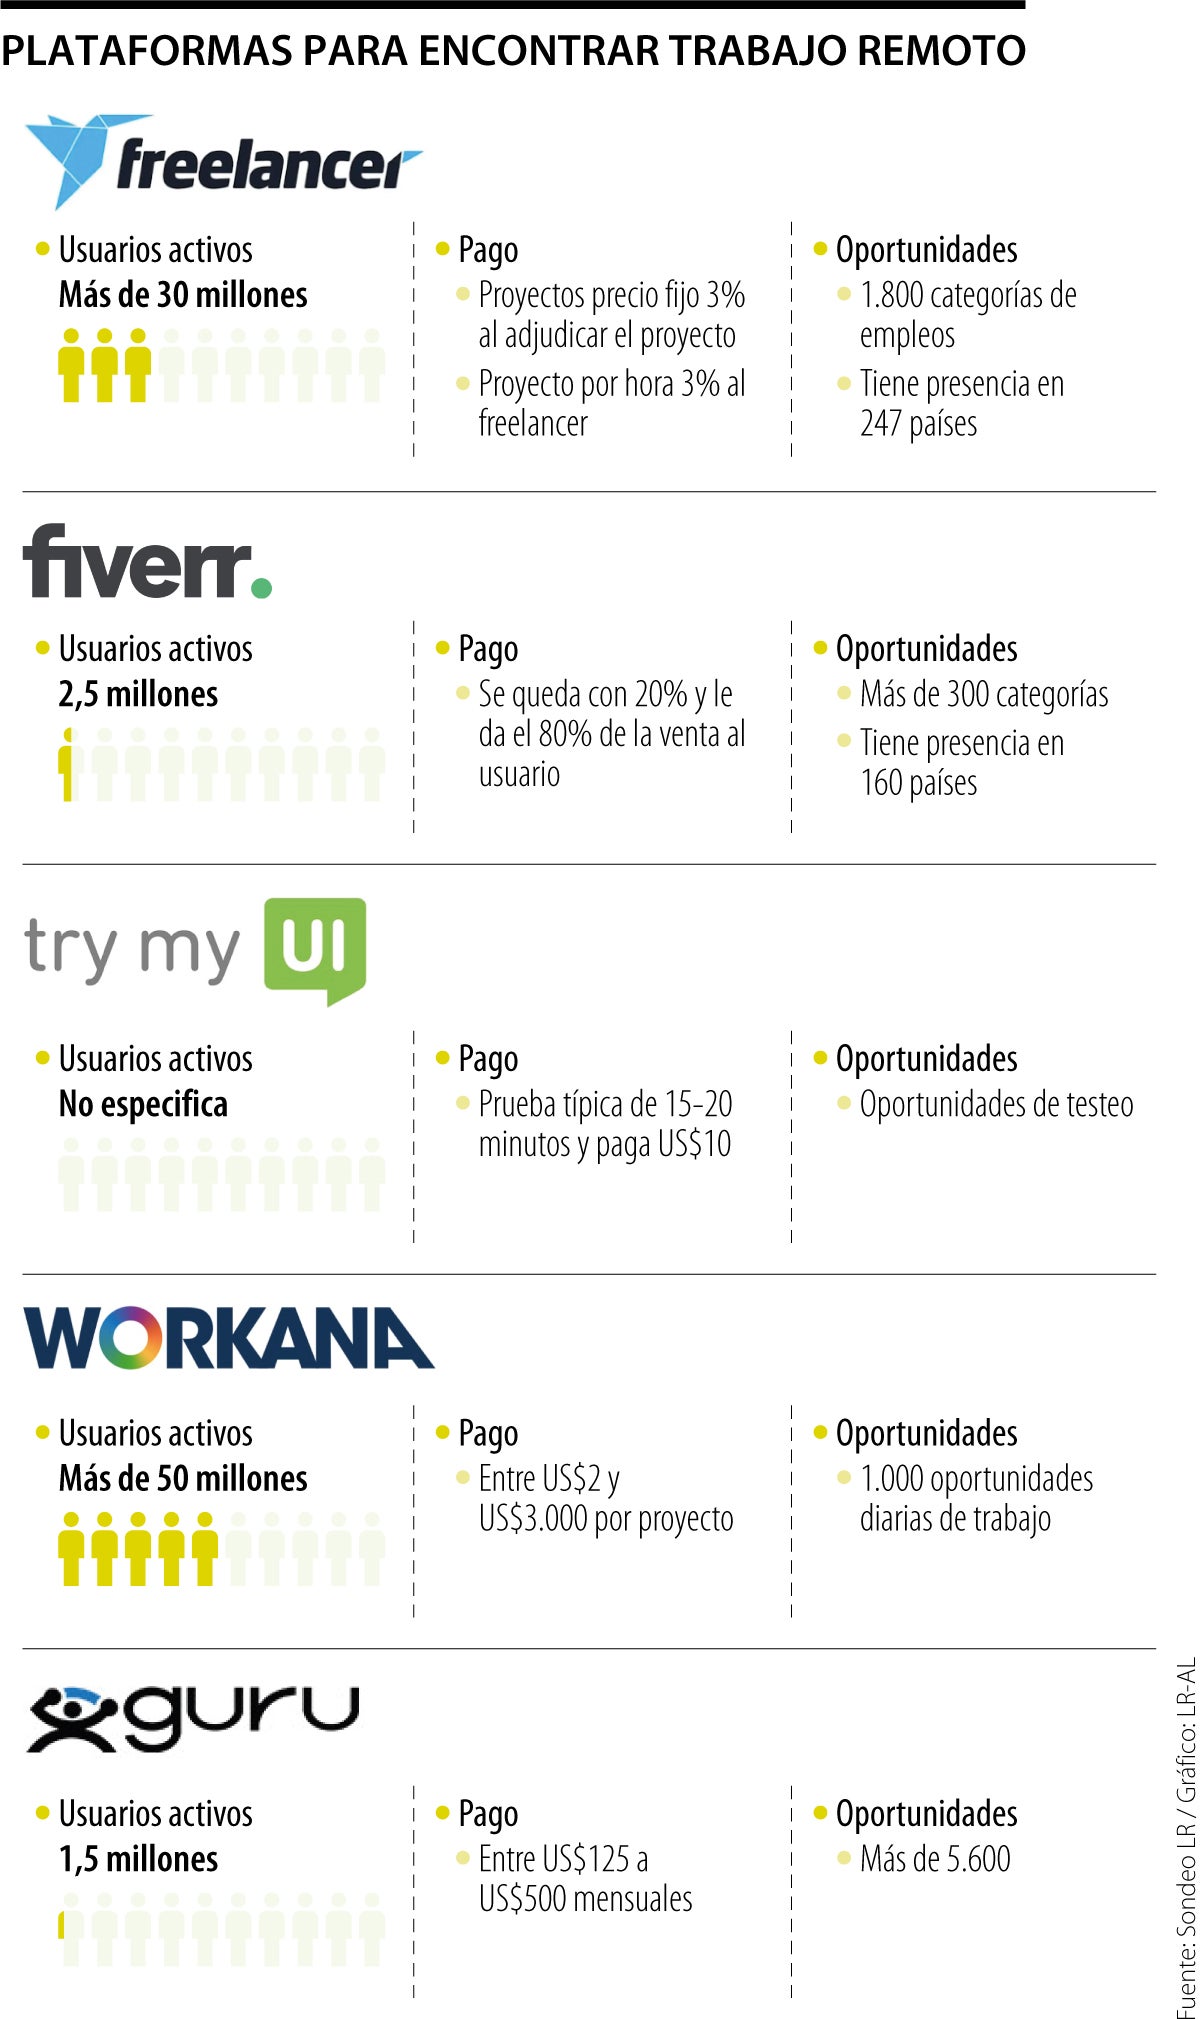 4 plataformas de trabajo remoto en Español 